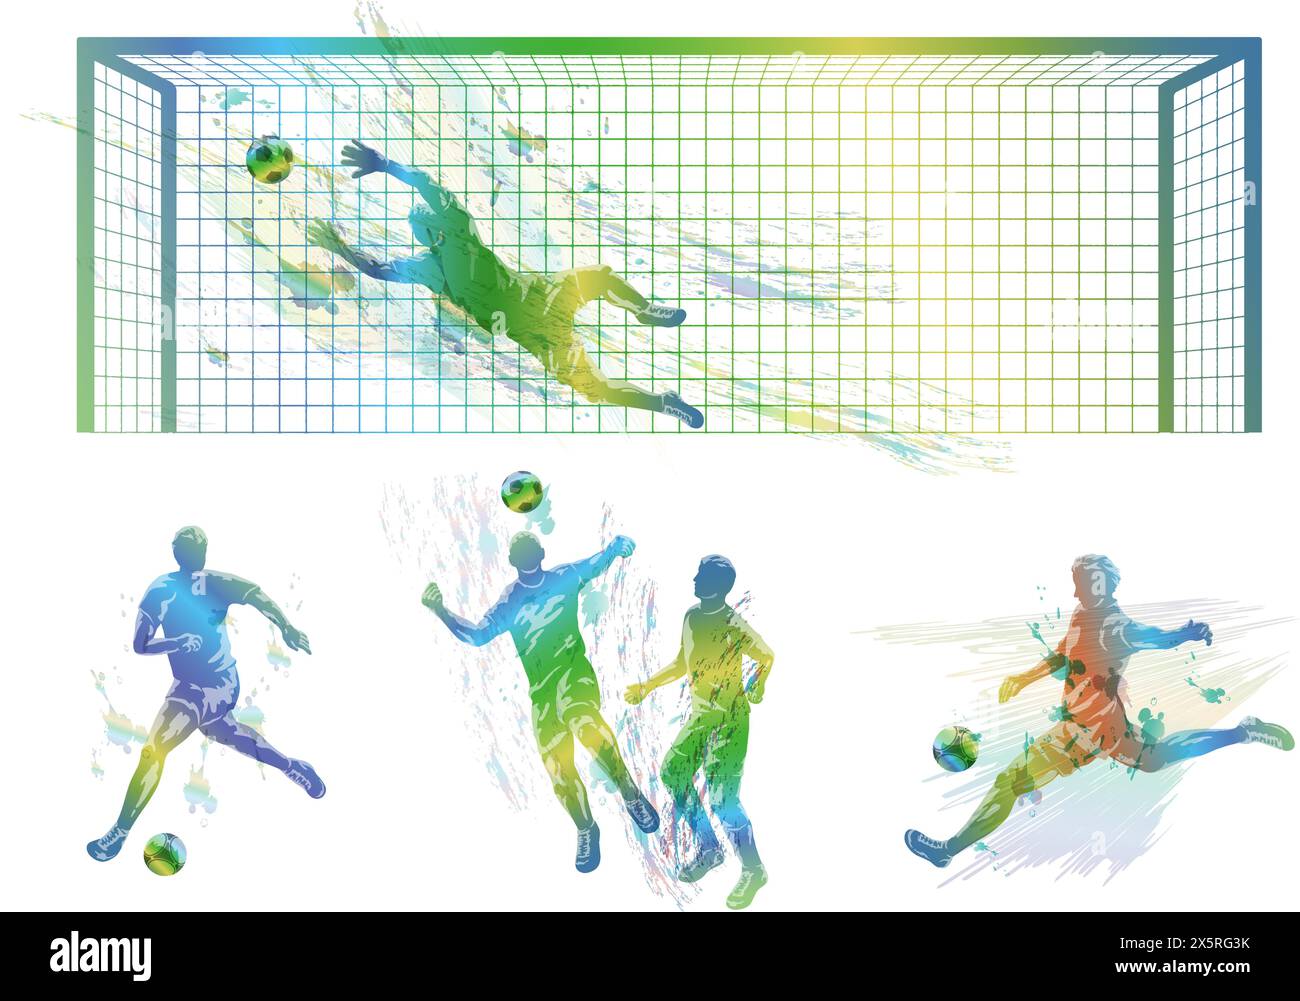 Fußballspieler Vektor Bunte Silhouette Illustration Set isoliert auf Einem weißen Hintergrund. Stock Vektor